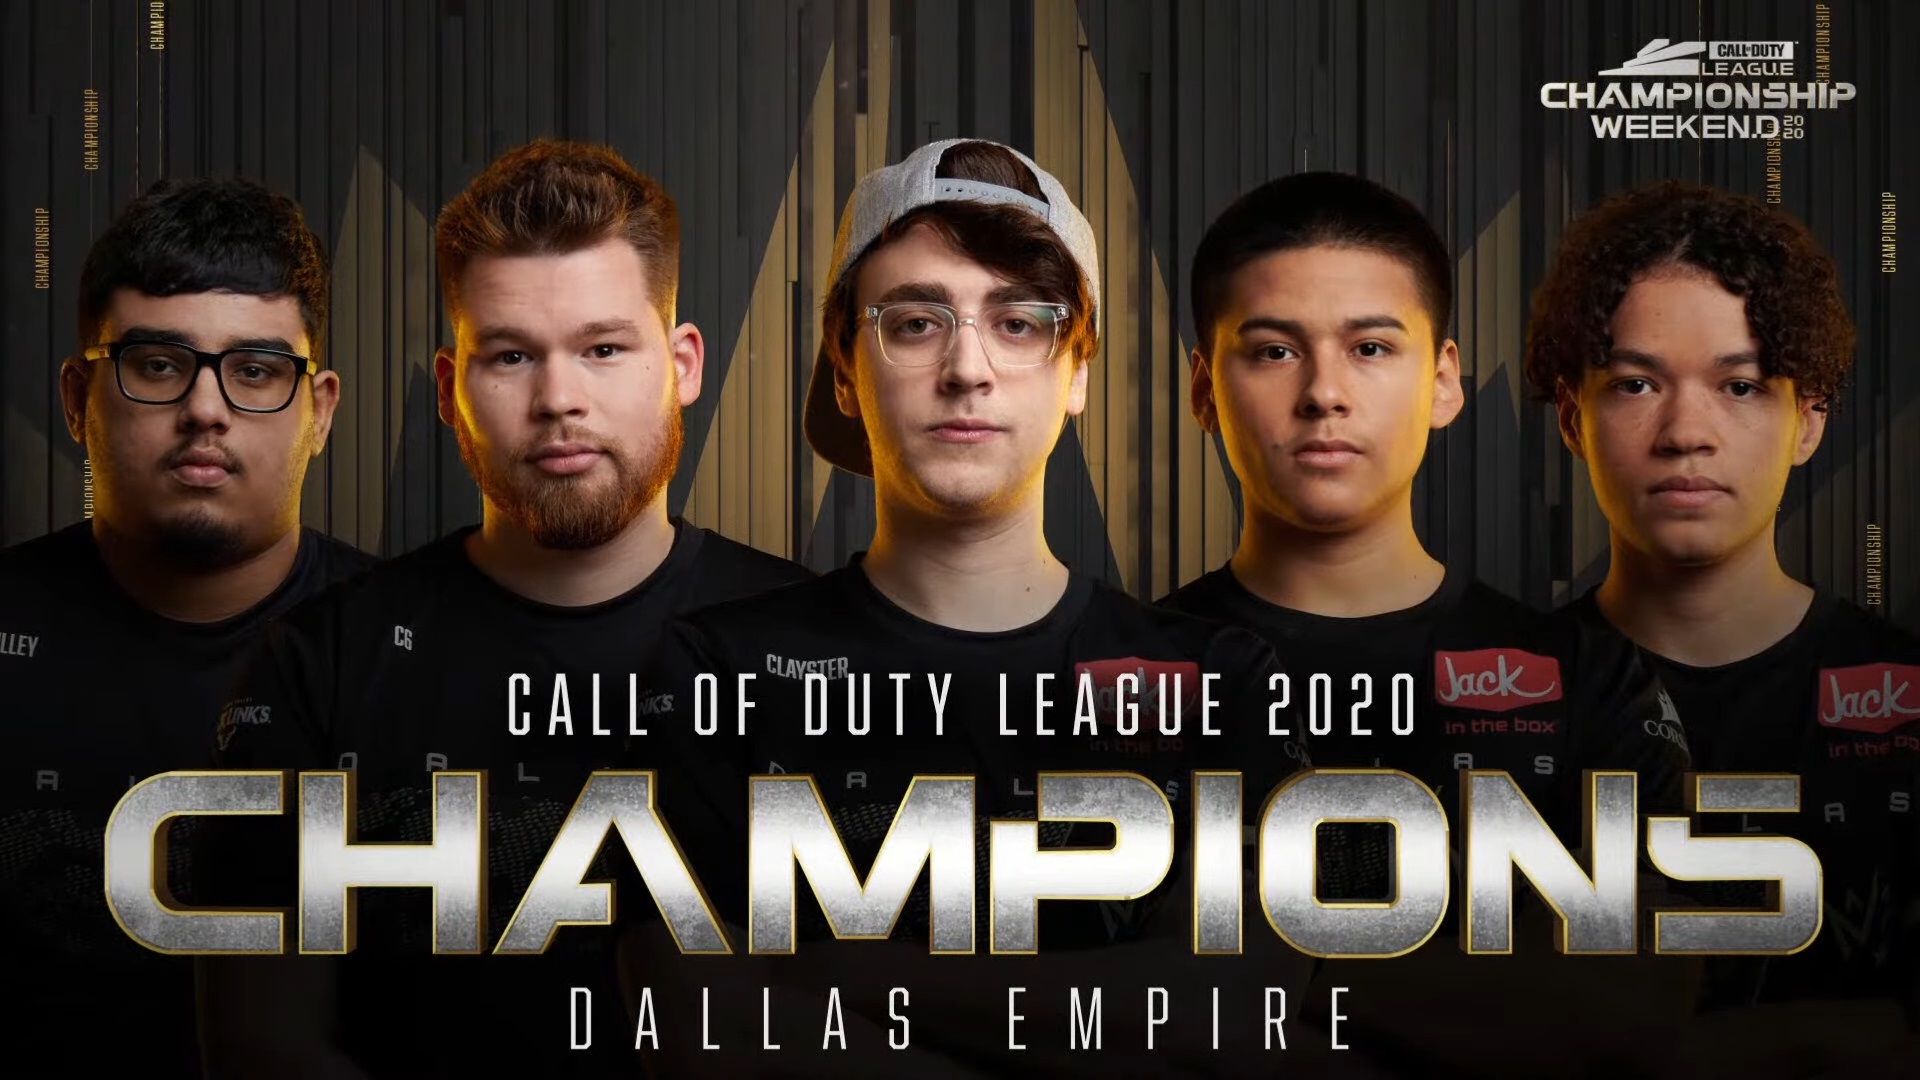 Dallas Empire vincendo gli Champs